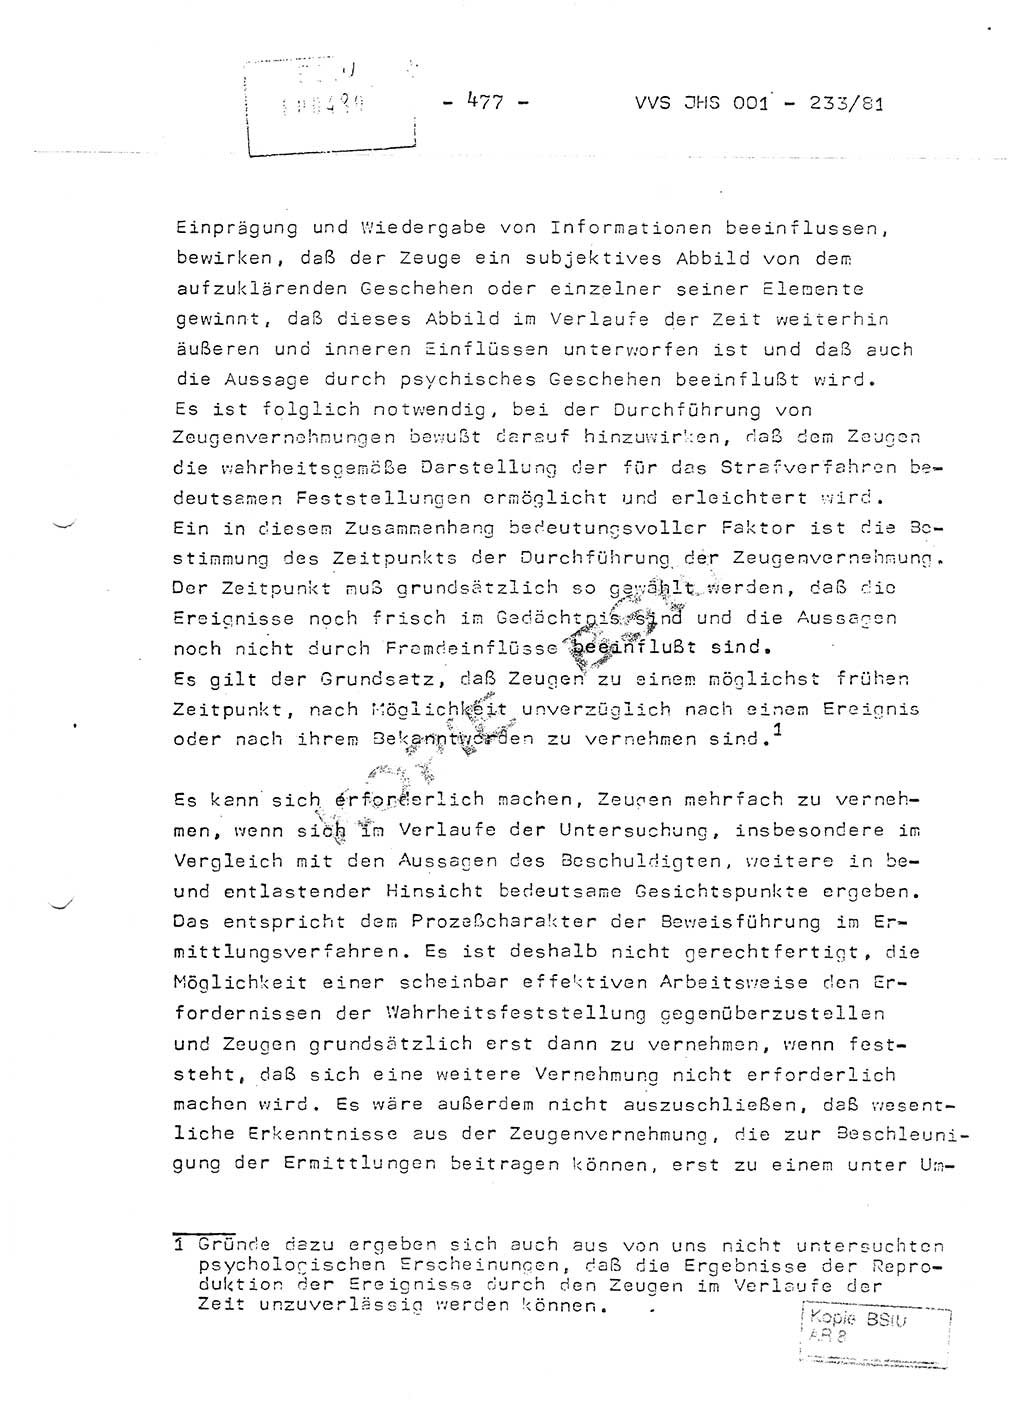 Dissertation Oberstleutnant Horst Zank (JHS), Oberstleutnant Dr. Karl-Heinz Knoblauch (JHS), Oberstleutnant Gustav-Adolf Kowalewski (HA Ⅸ), Oberstleutnant Wolfgang Plötner (HA Ⅸ), Ministerium für Staatssicherheit (MfS) [Deutsche Demokratische Republik (DDR)], Juristische Hochschule (JHS), Vertrauliche Verschlußsache (VVS) o001-233/81, Potsdam 1981, Blatt 477 (Diss. MfS DDR JHS VVS o001-233/81 1981, Bl. 477)